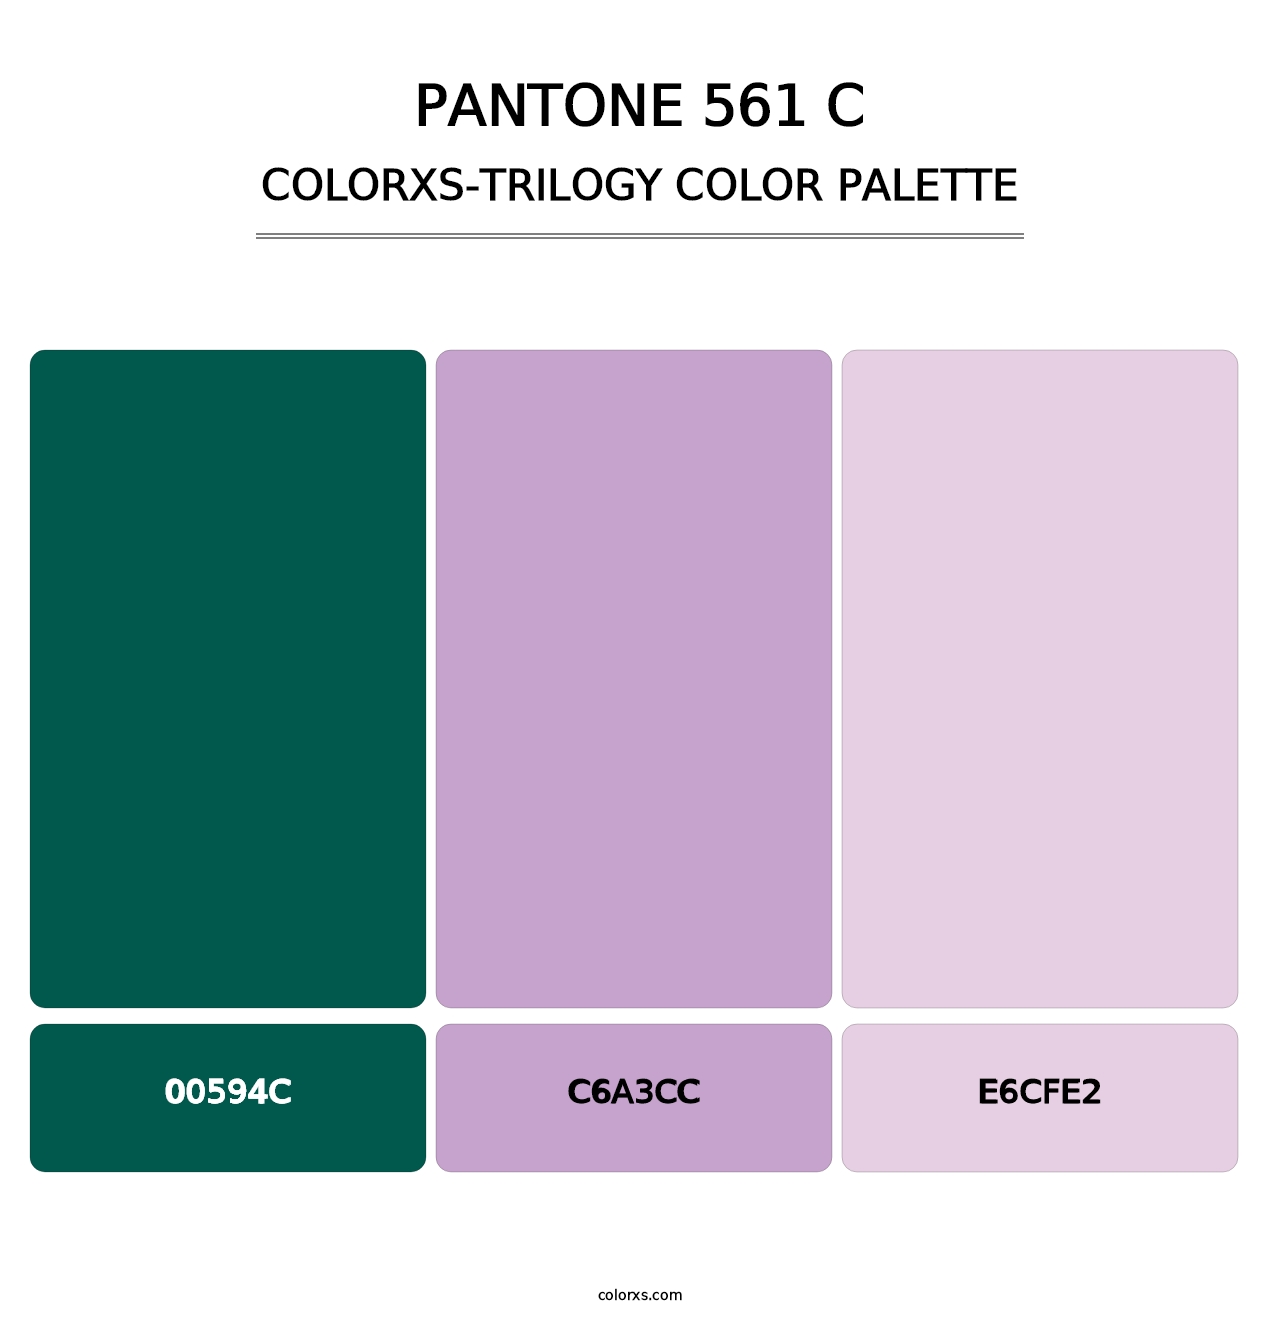 PANTONE 561 C - Colorxs Trilogy Palette